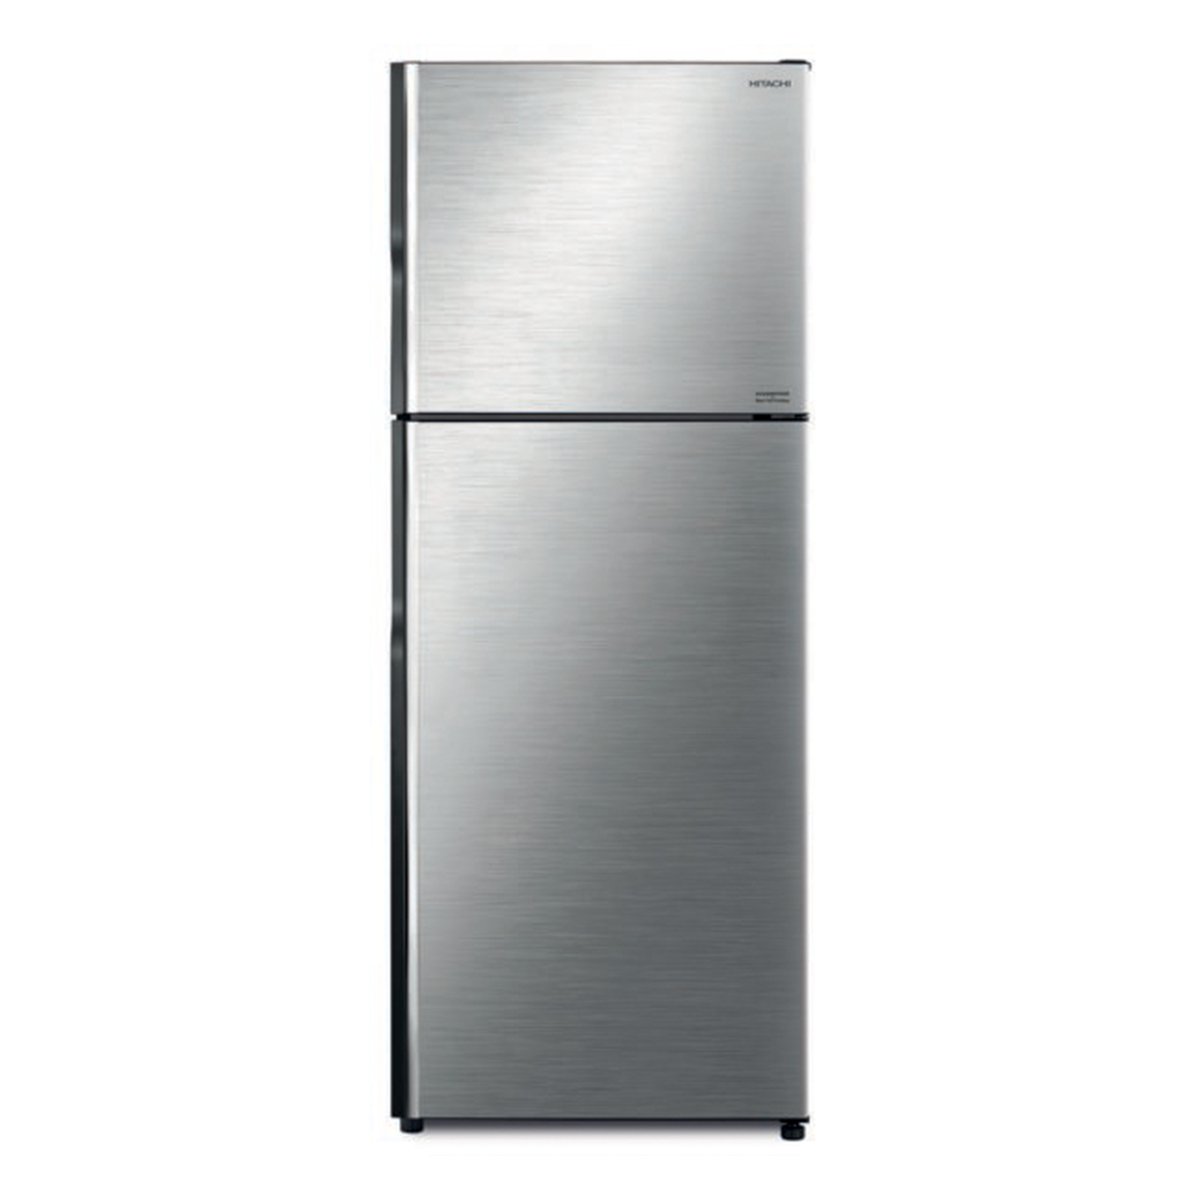 Hitachi Double Door Refrigerator RV550PK8KBSL 550Ltr